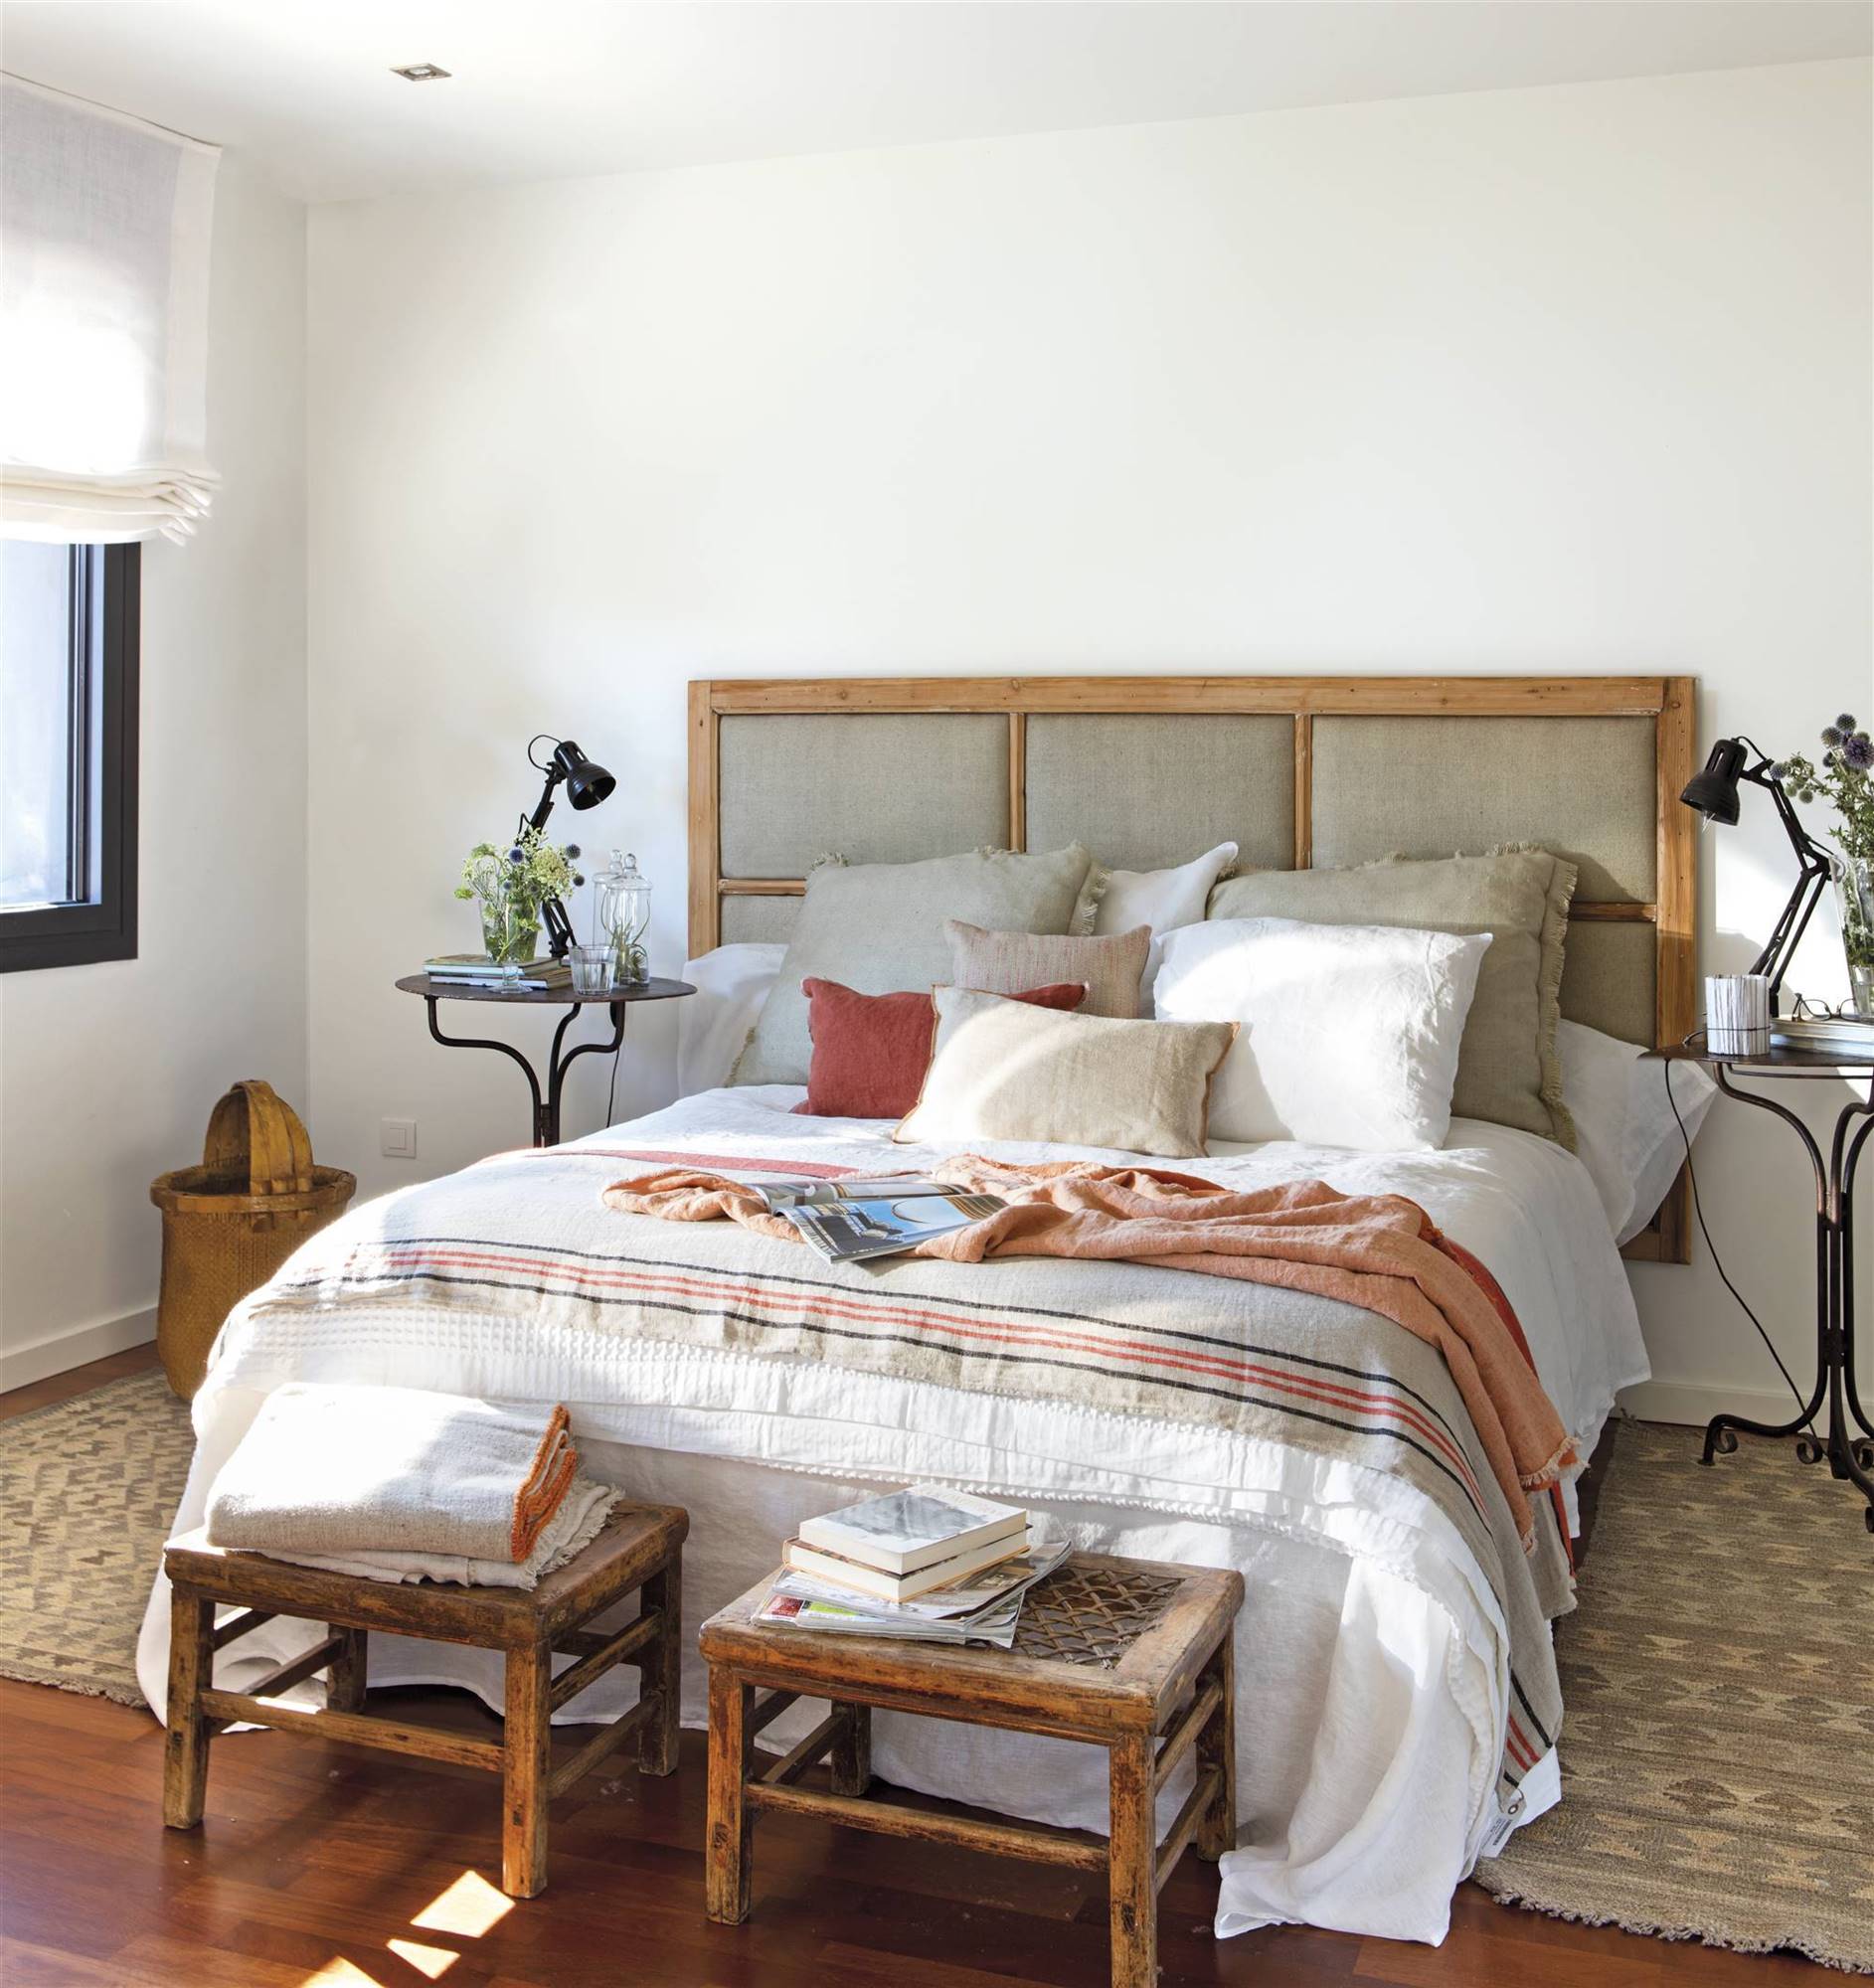 Dormitorio con cabezal tapizado cuarterones color lino y toques caldera.